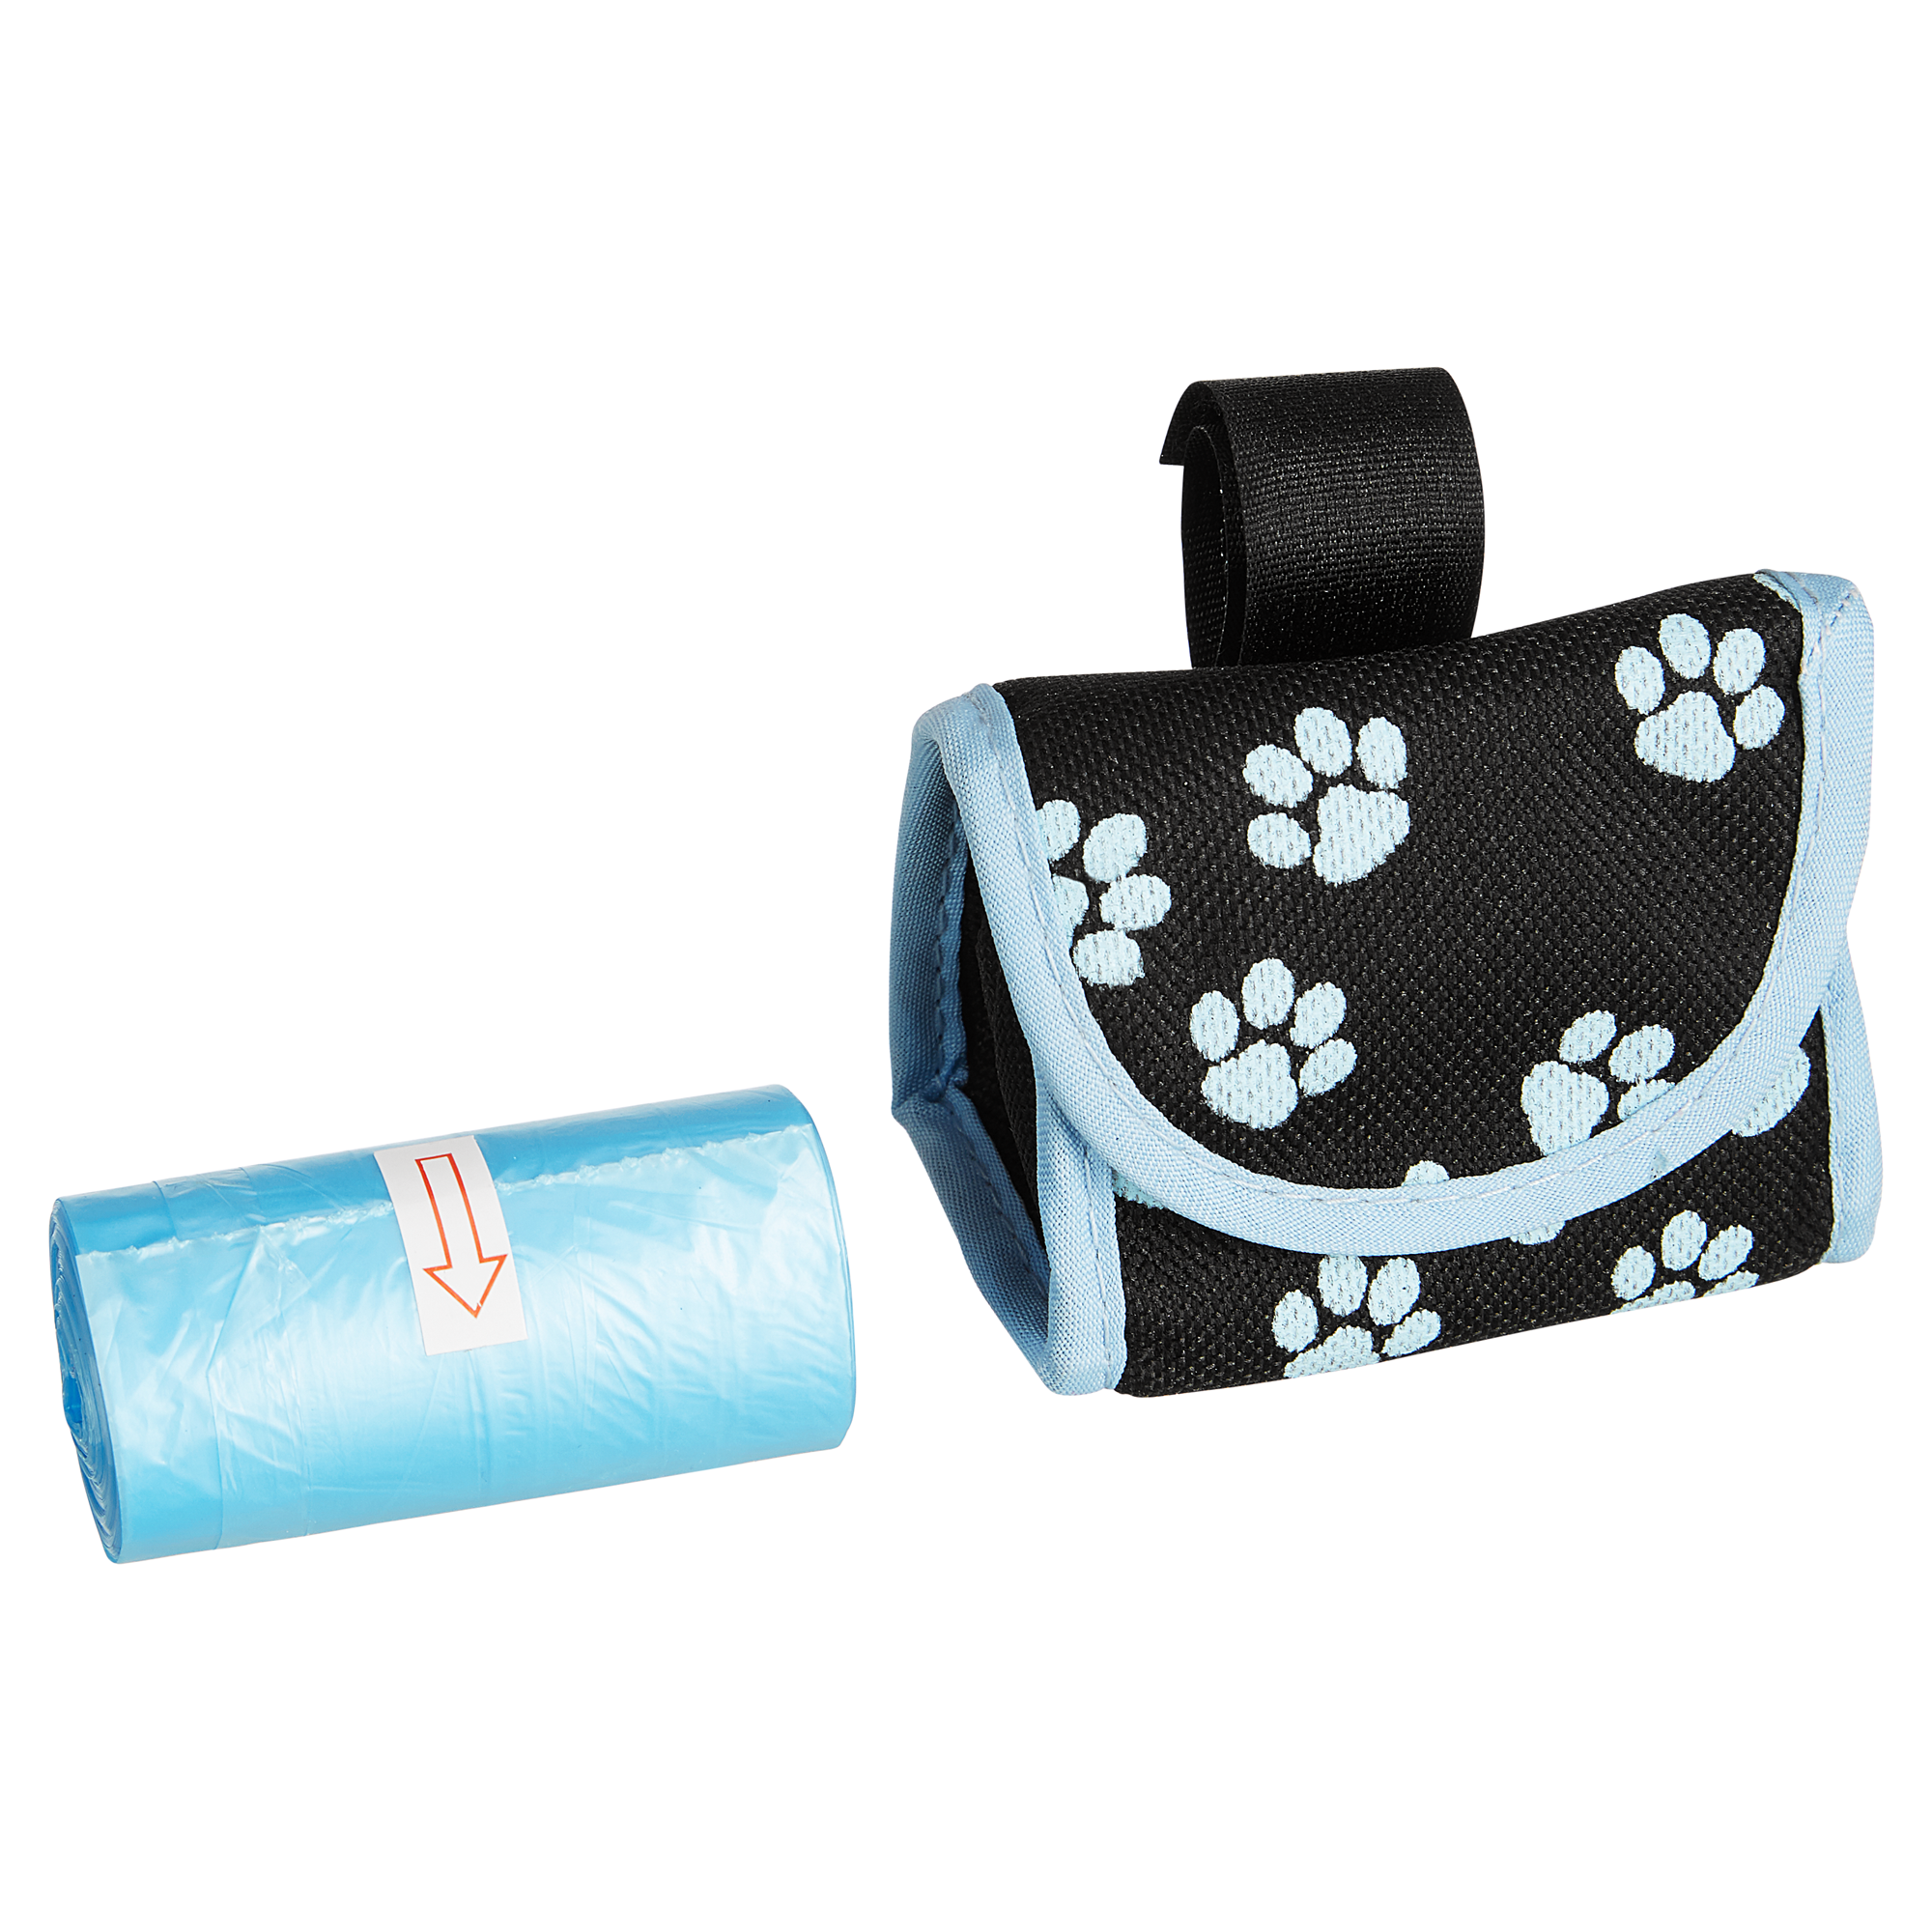 Aufbewahrungstasche für Hundekotbeutel "Easy Bag Holder" schwarz/blau + product picture